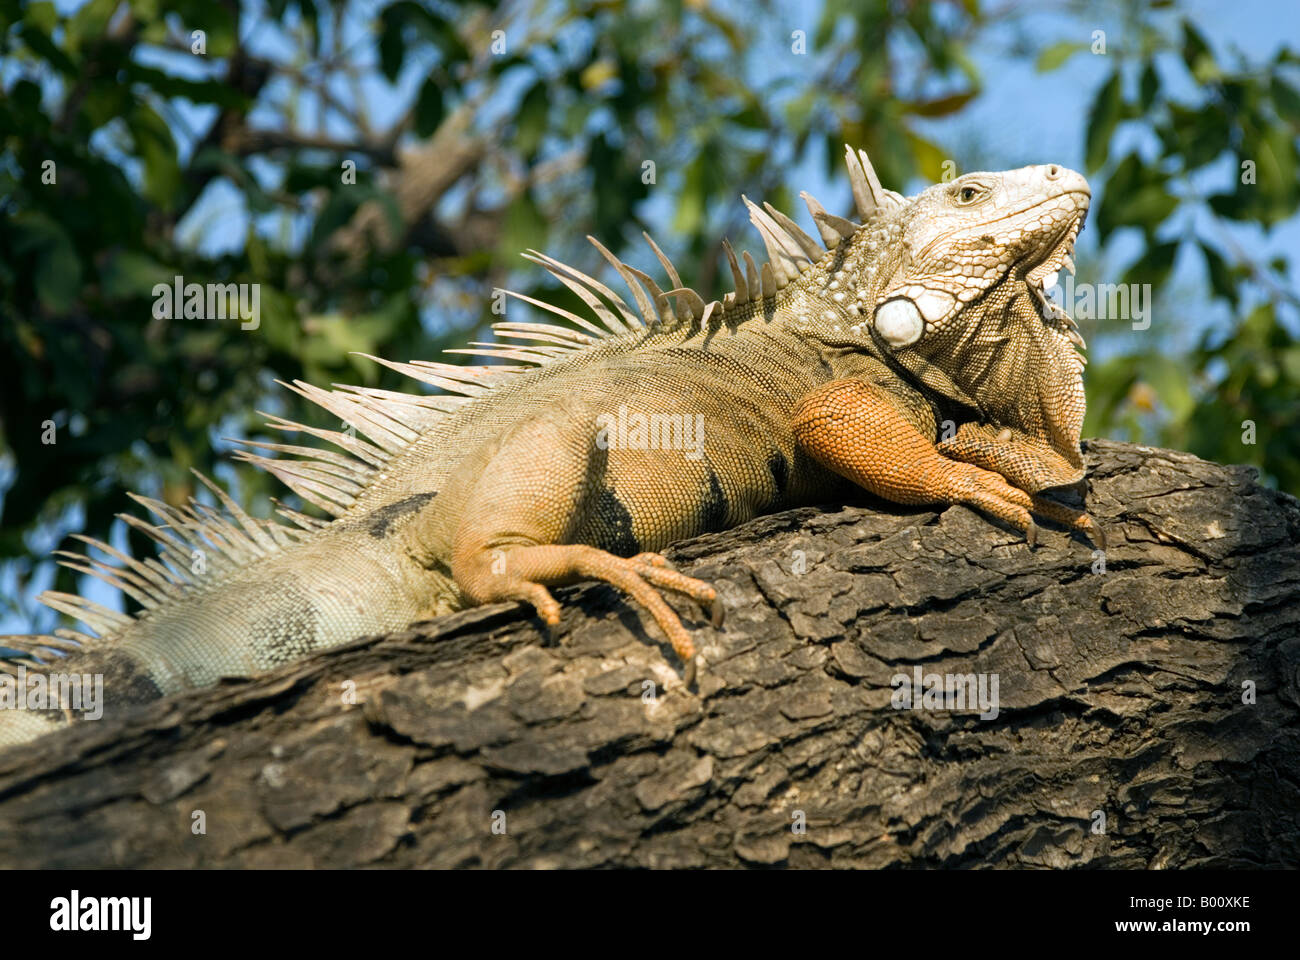 An iguana in the Parque del Centenario, Cartagena de Indias, Colombia Stock Photo